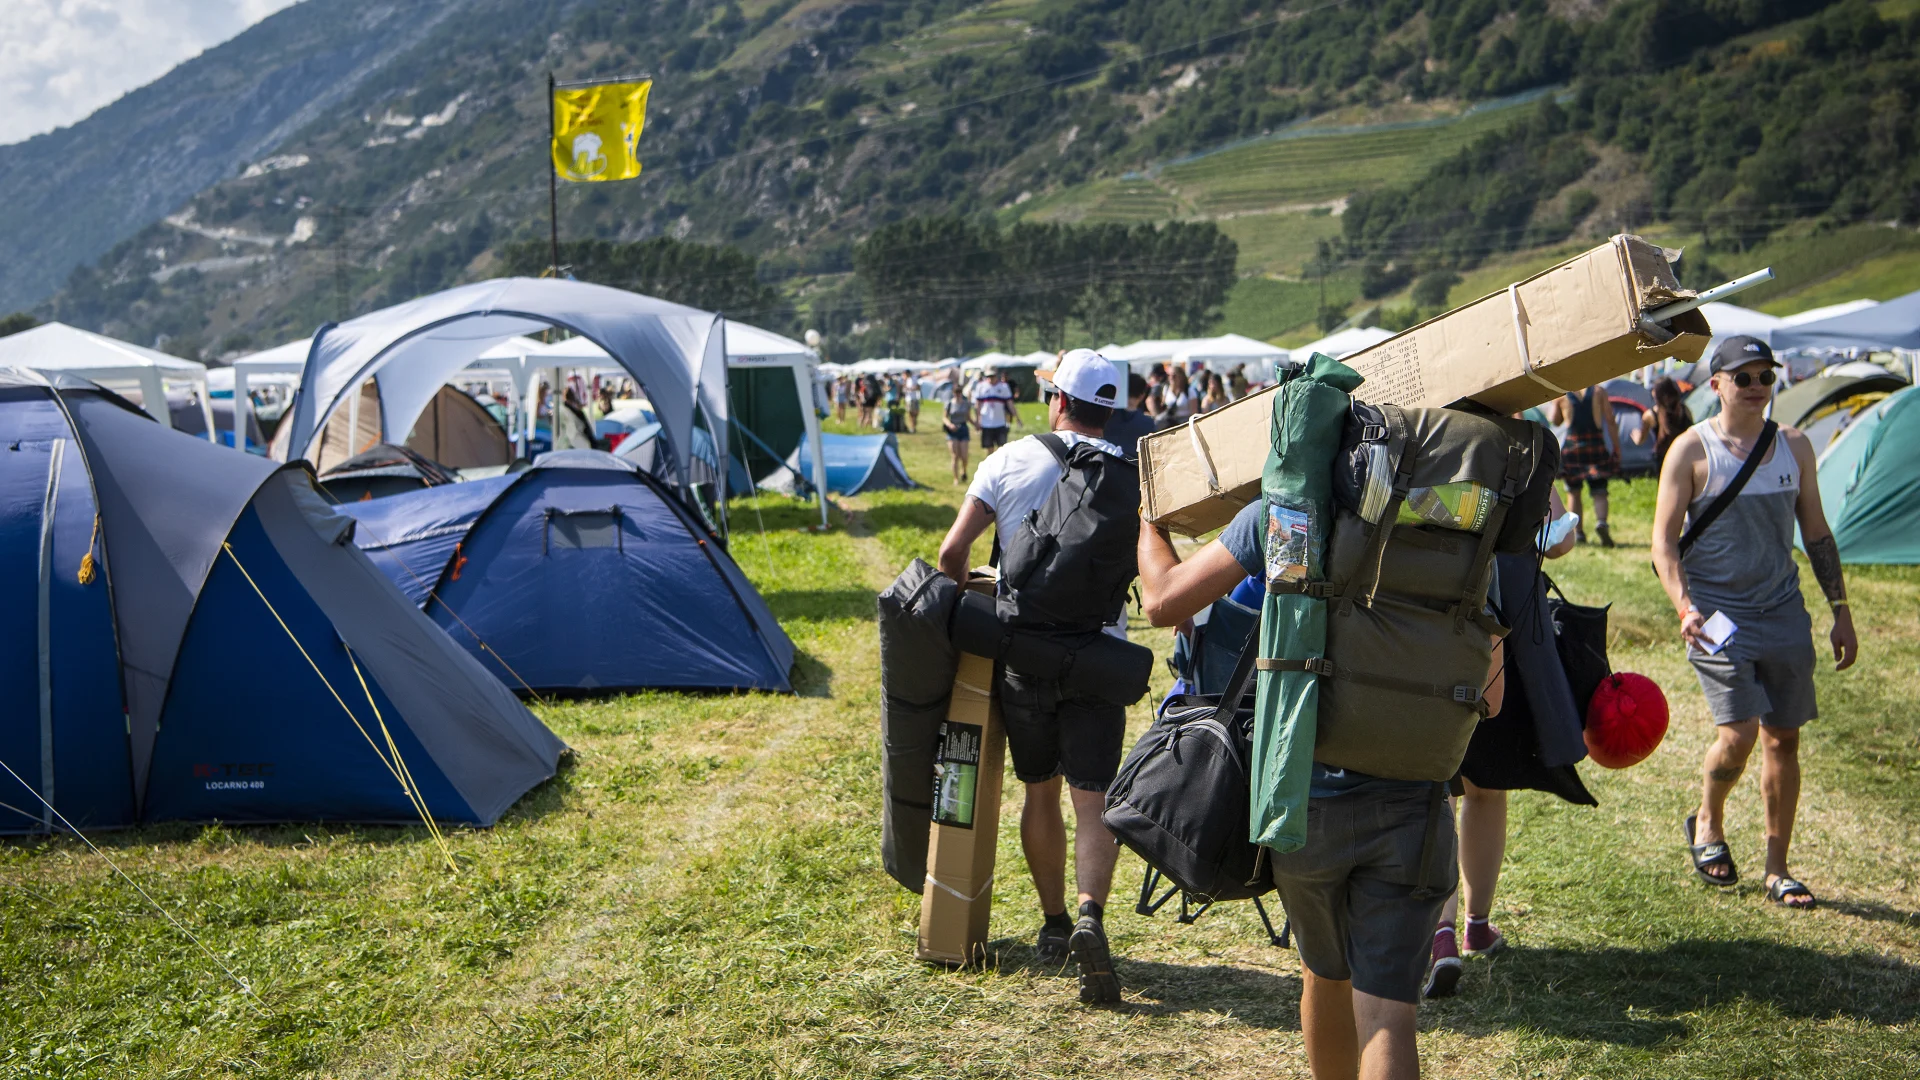 Les fans du festival transportent des tentes et des bagages